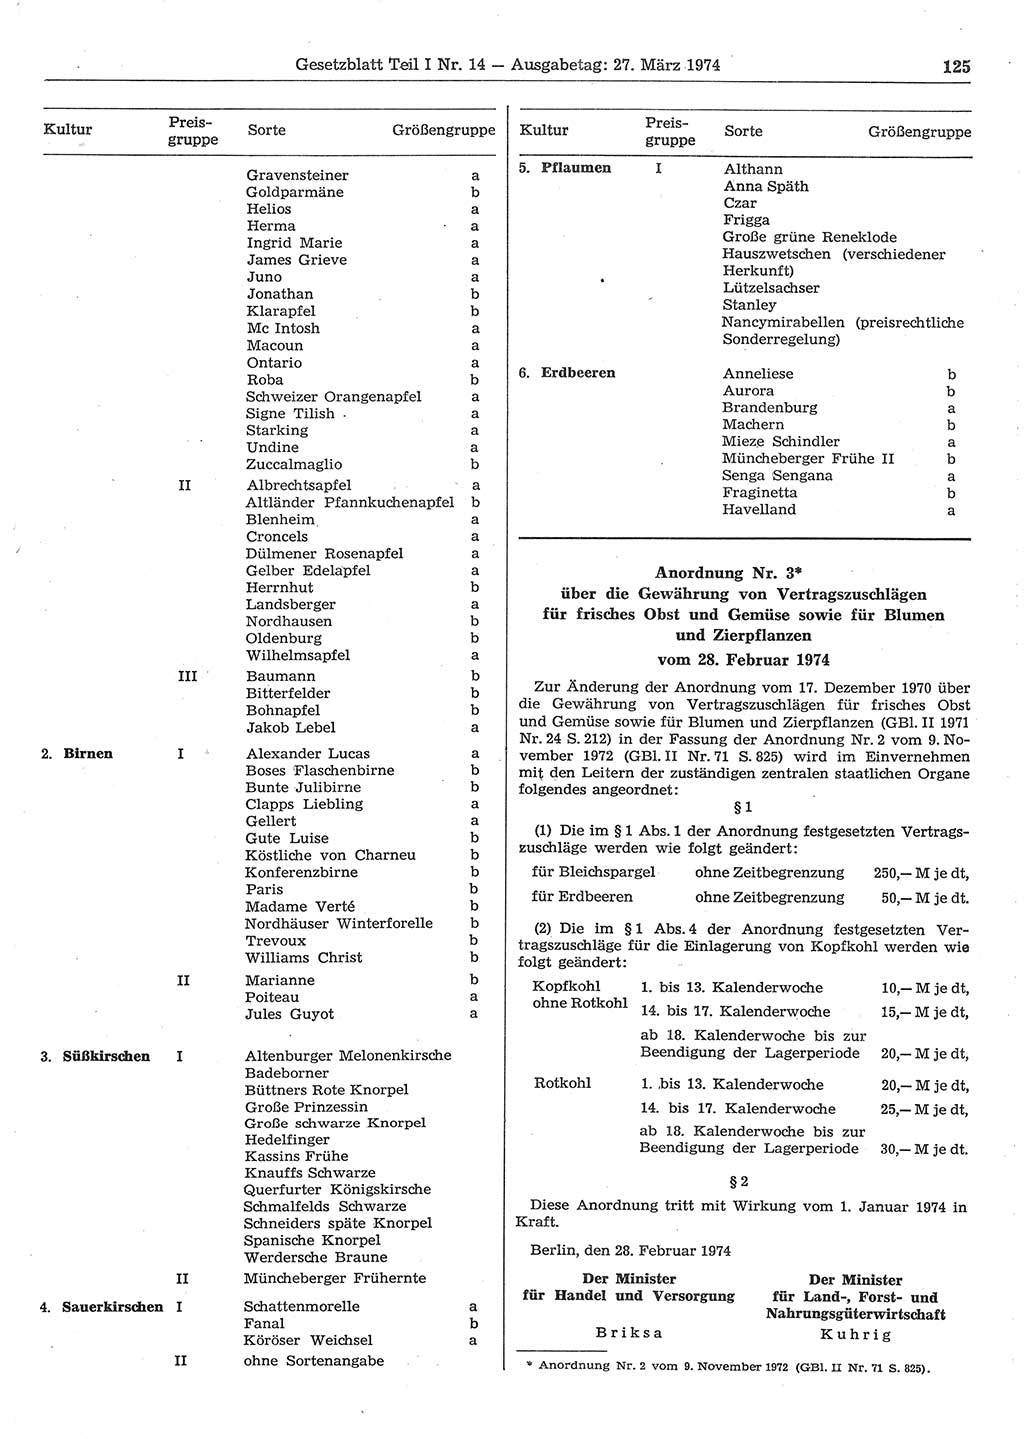 Gesetzblatt (GBl.) der Deutschen Demokratischen Republik (DDR) Teil Ⅰ 1974, Seite 125 (GBl. DDR Ⅰ 1974, S. 125)